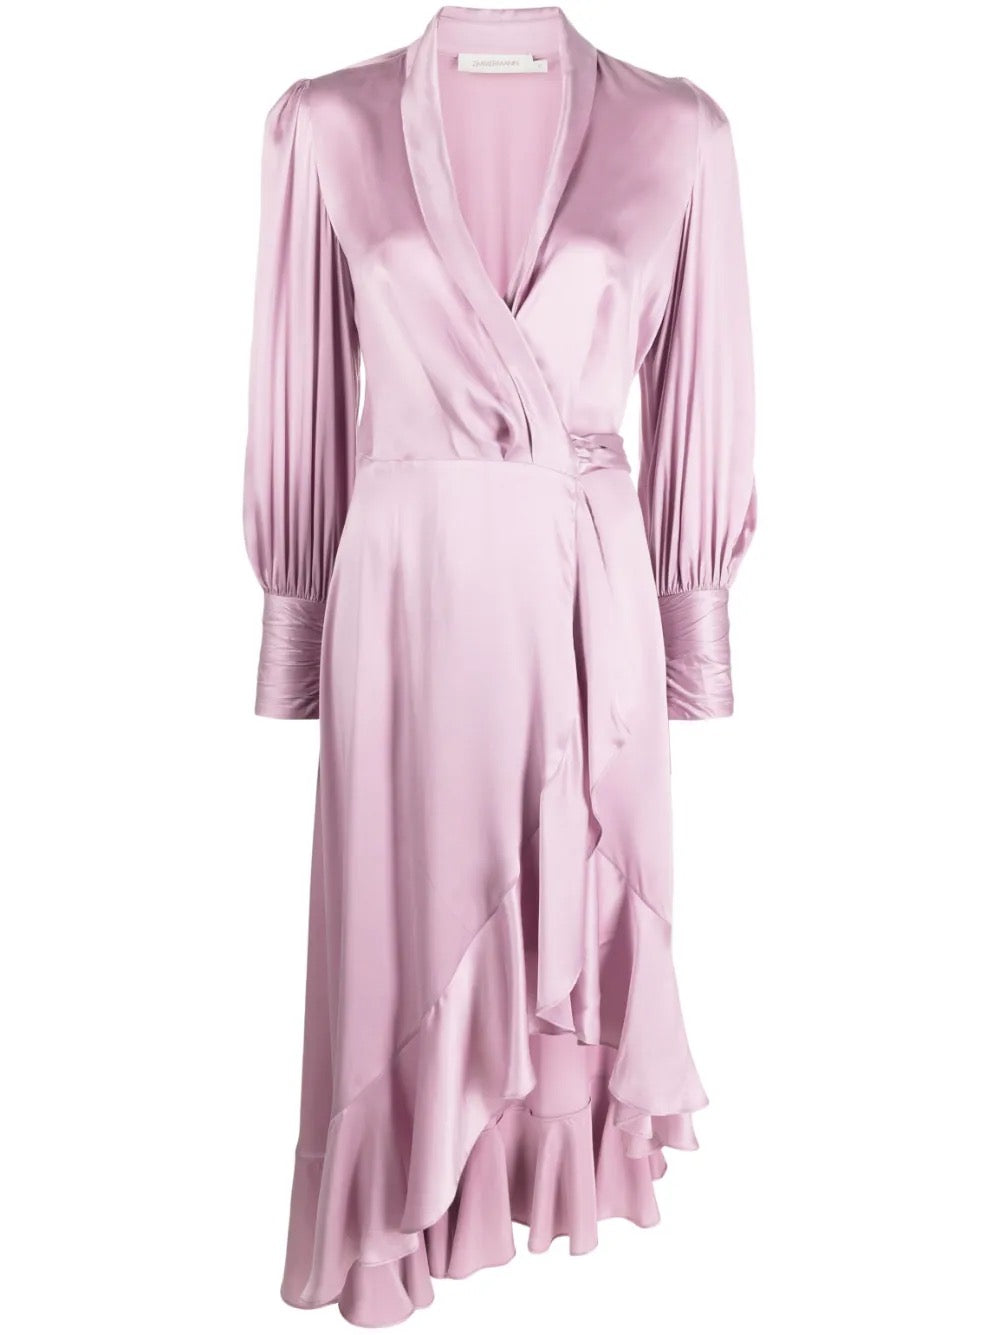 Zimmermann Wickelkleid Kleid rosa asymmetrisch V-Ausschnitt